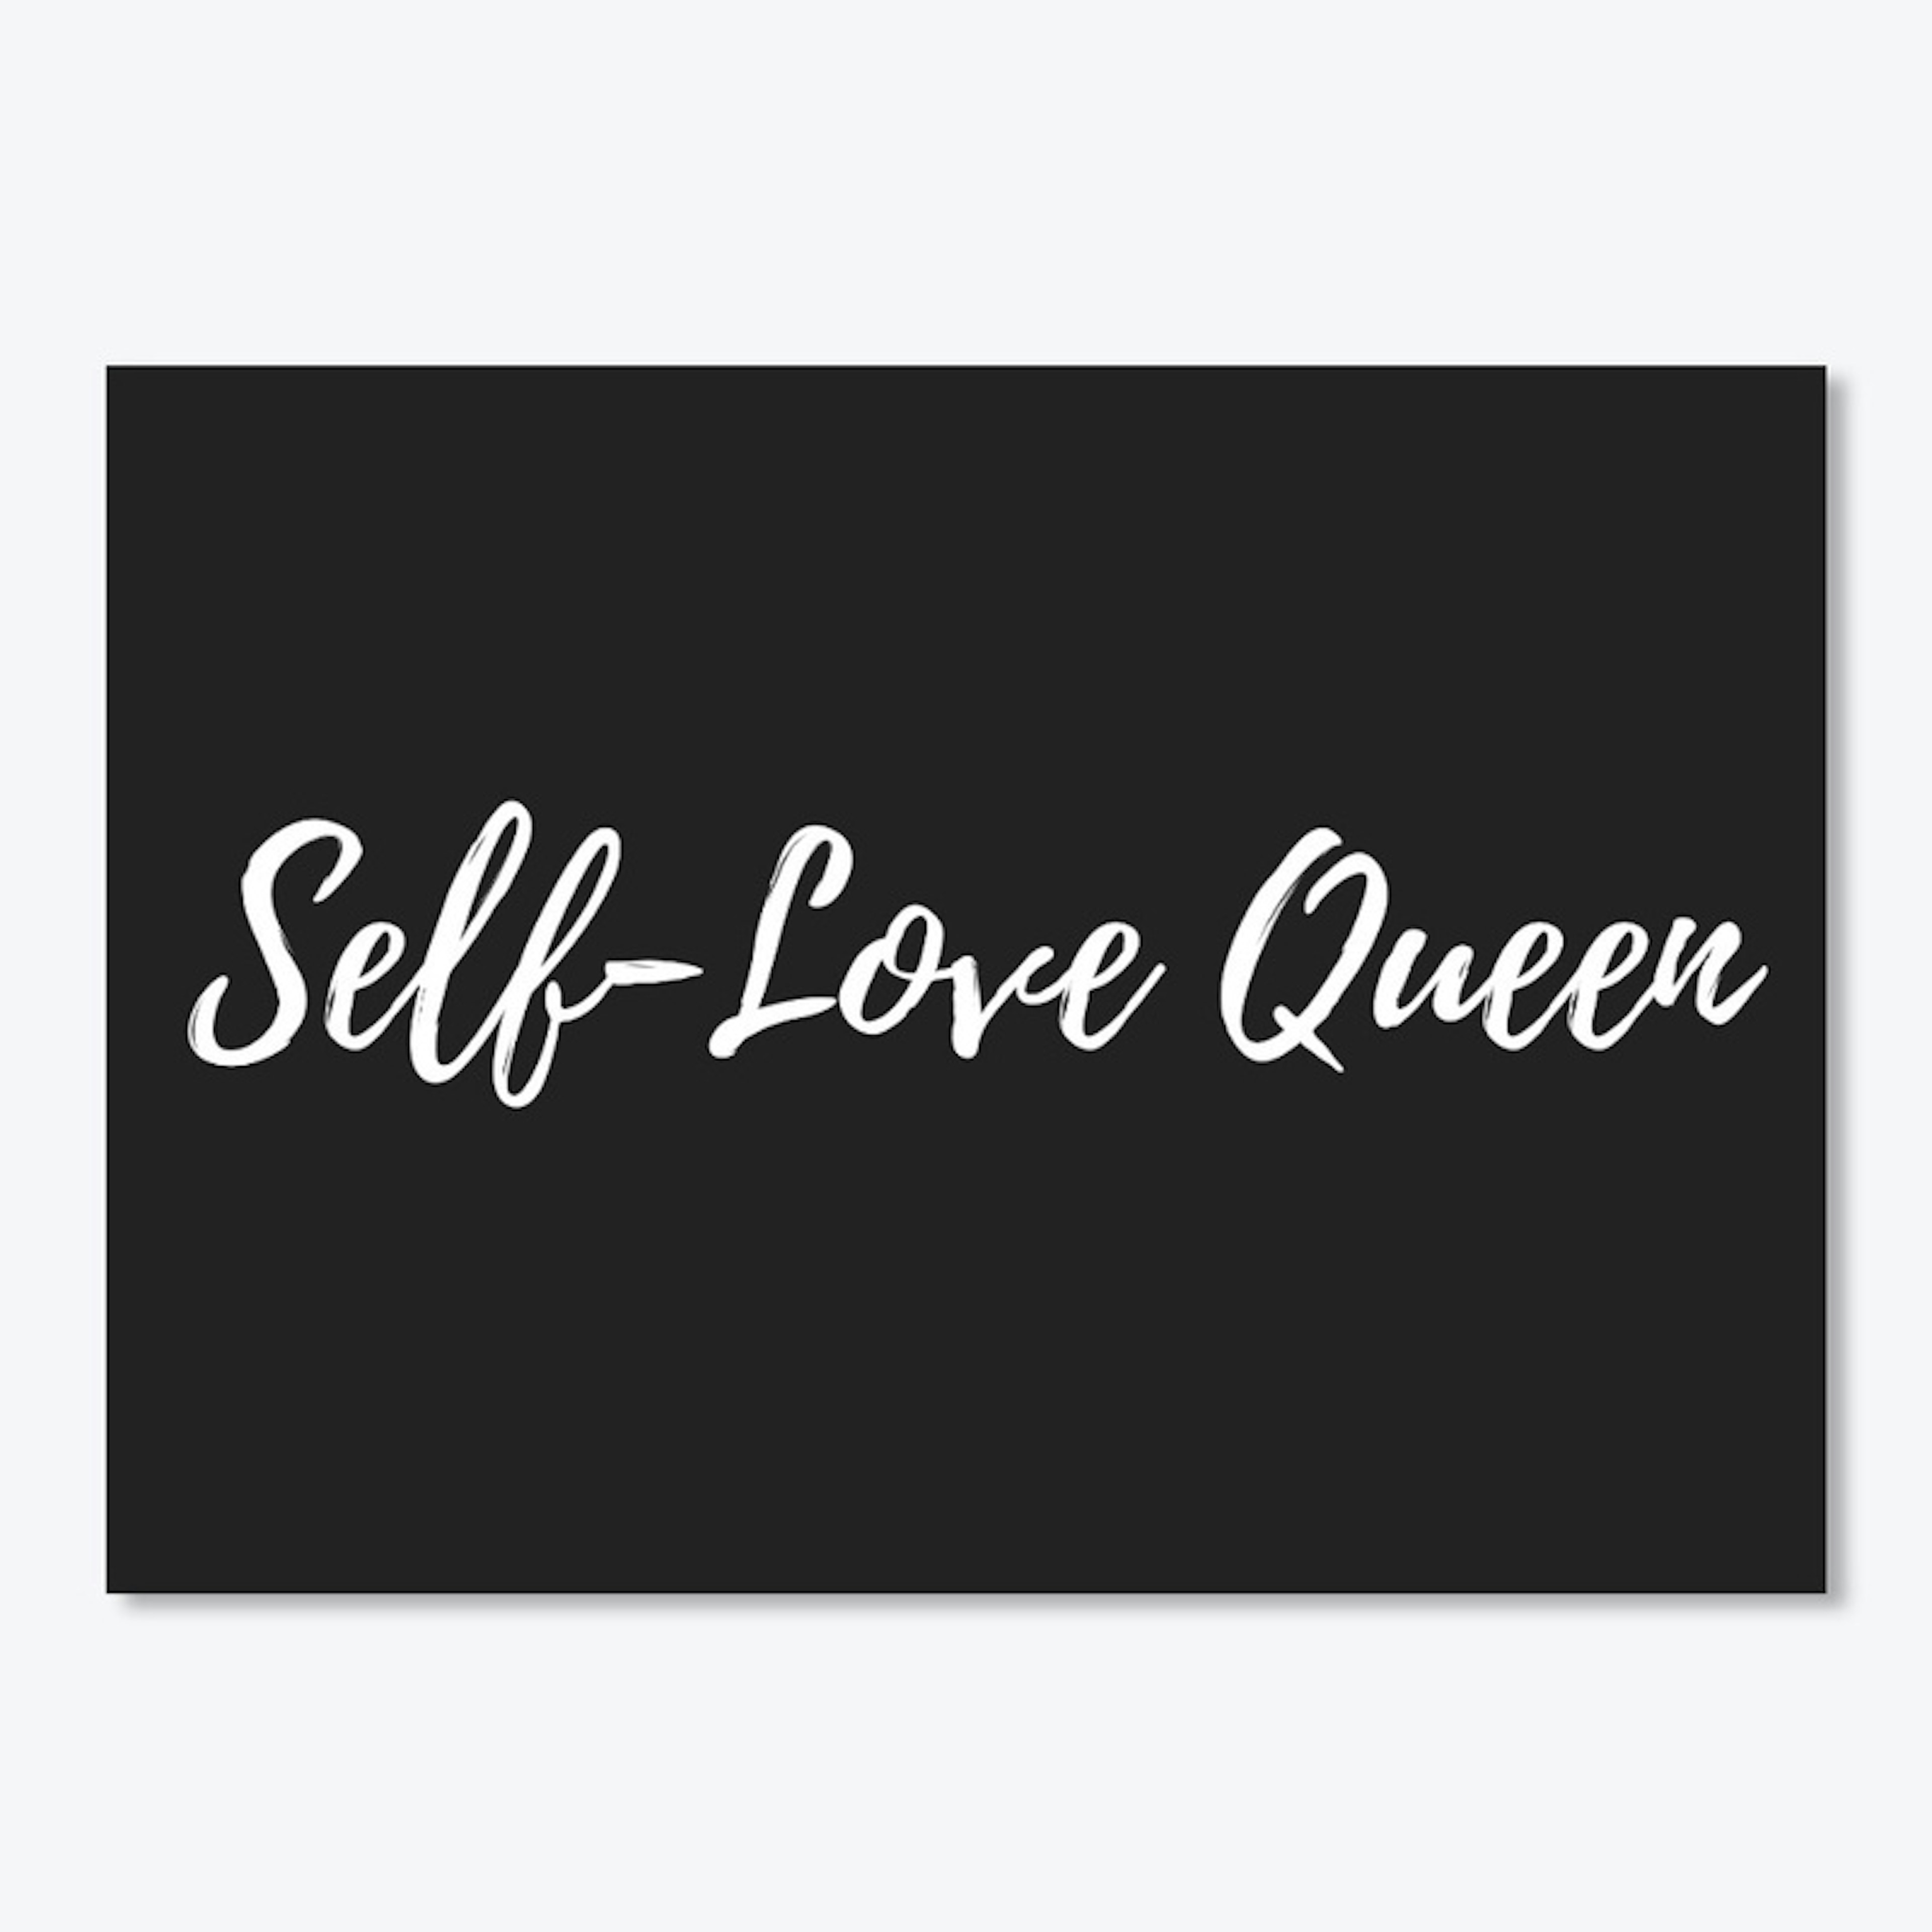 Self-Love Queen Mask